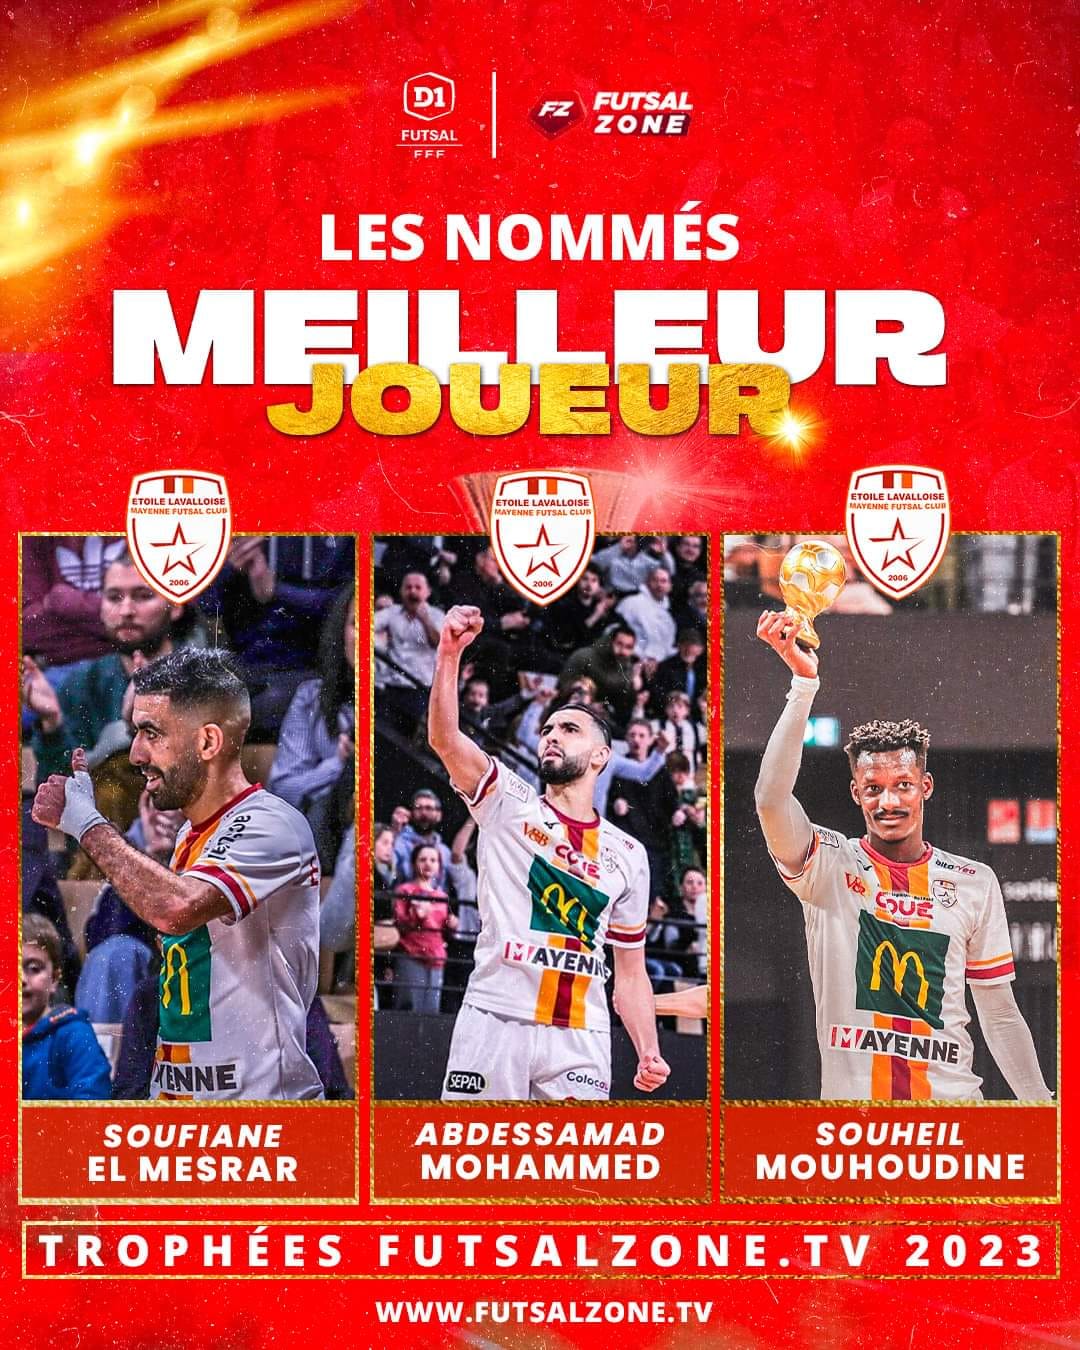 المغربي سفيان المسرار مرشح لجائزة أفضل لاعب في الدوري الفرنسي للفوتسال